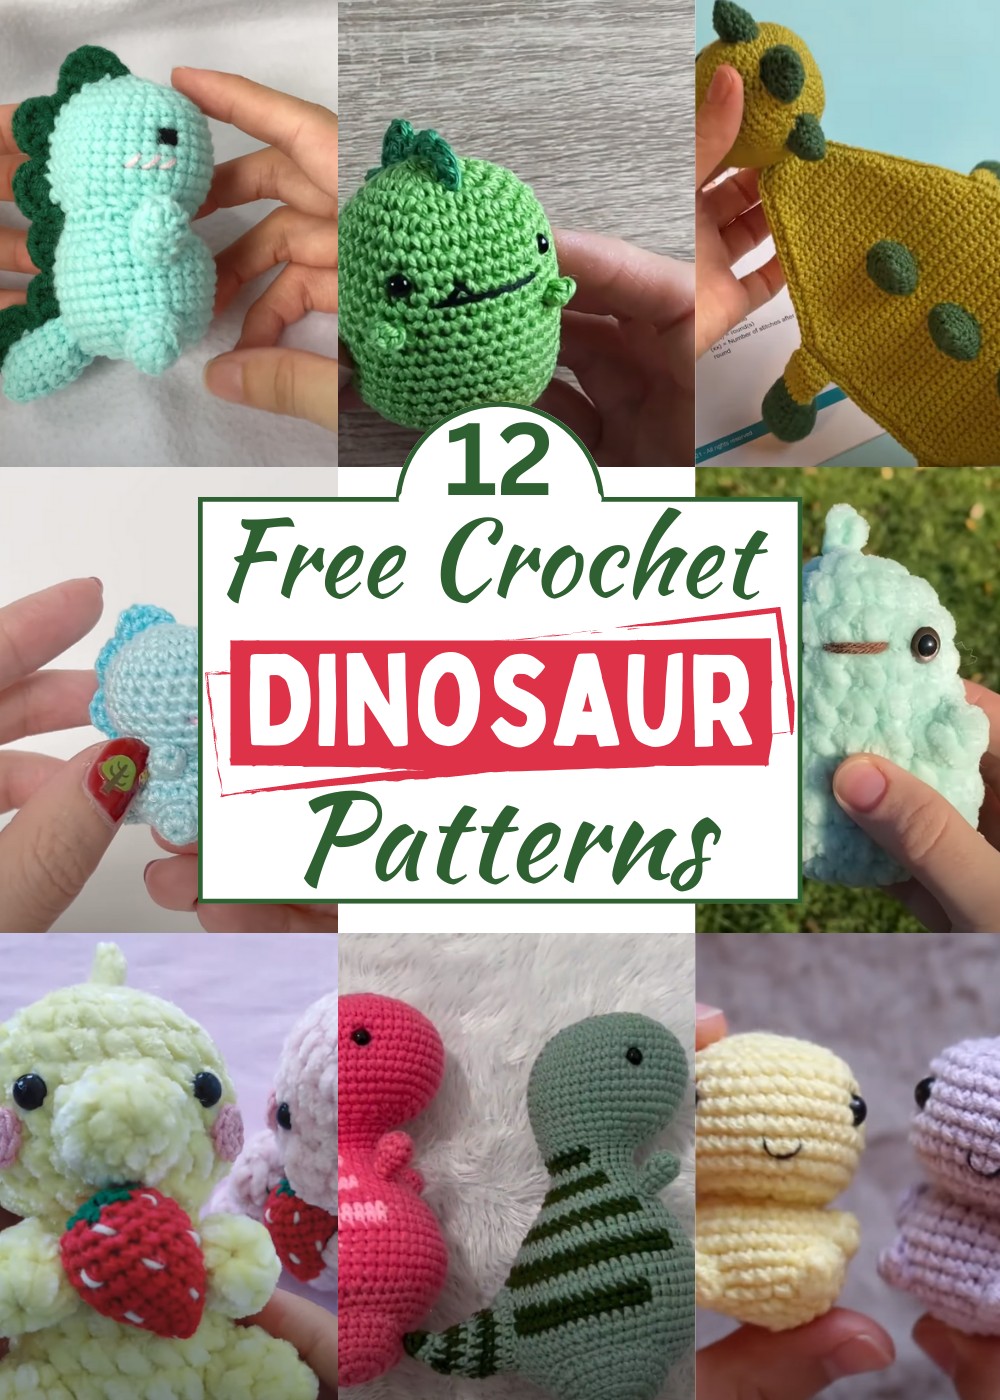 Crochet Dinosaur Patterns